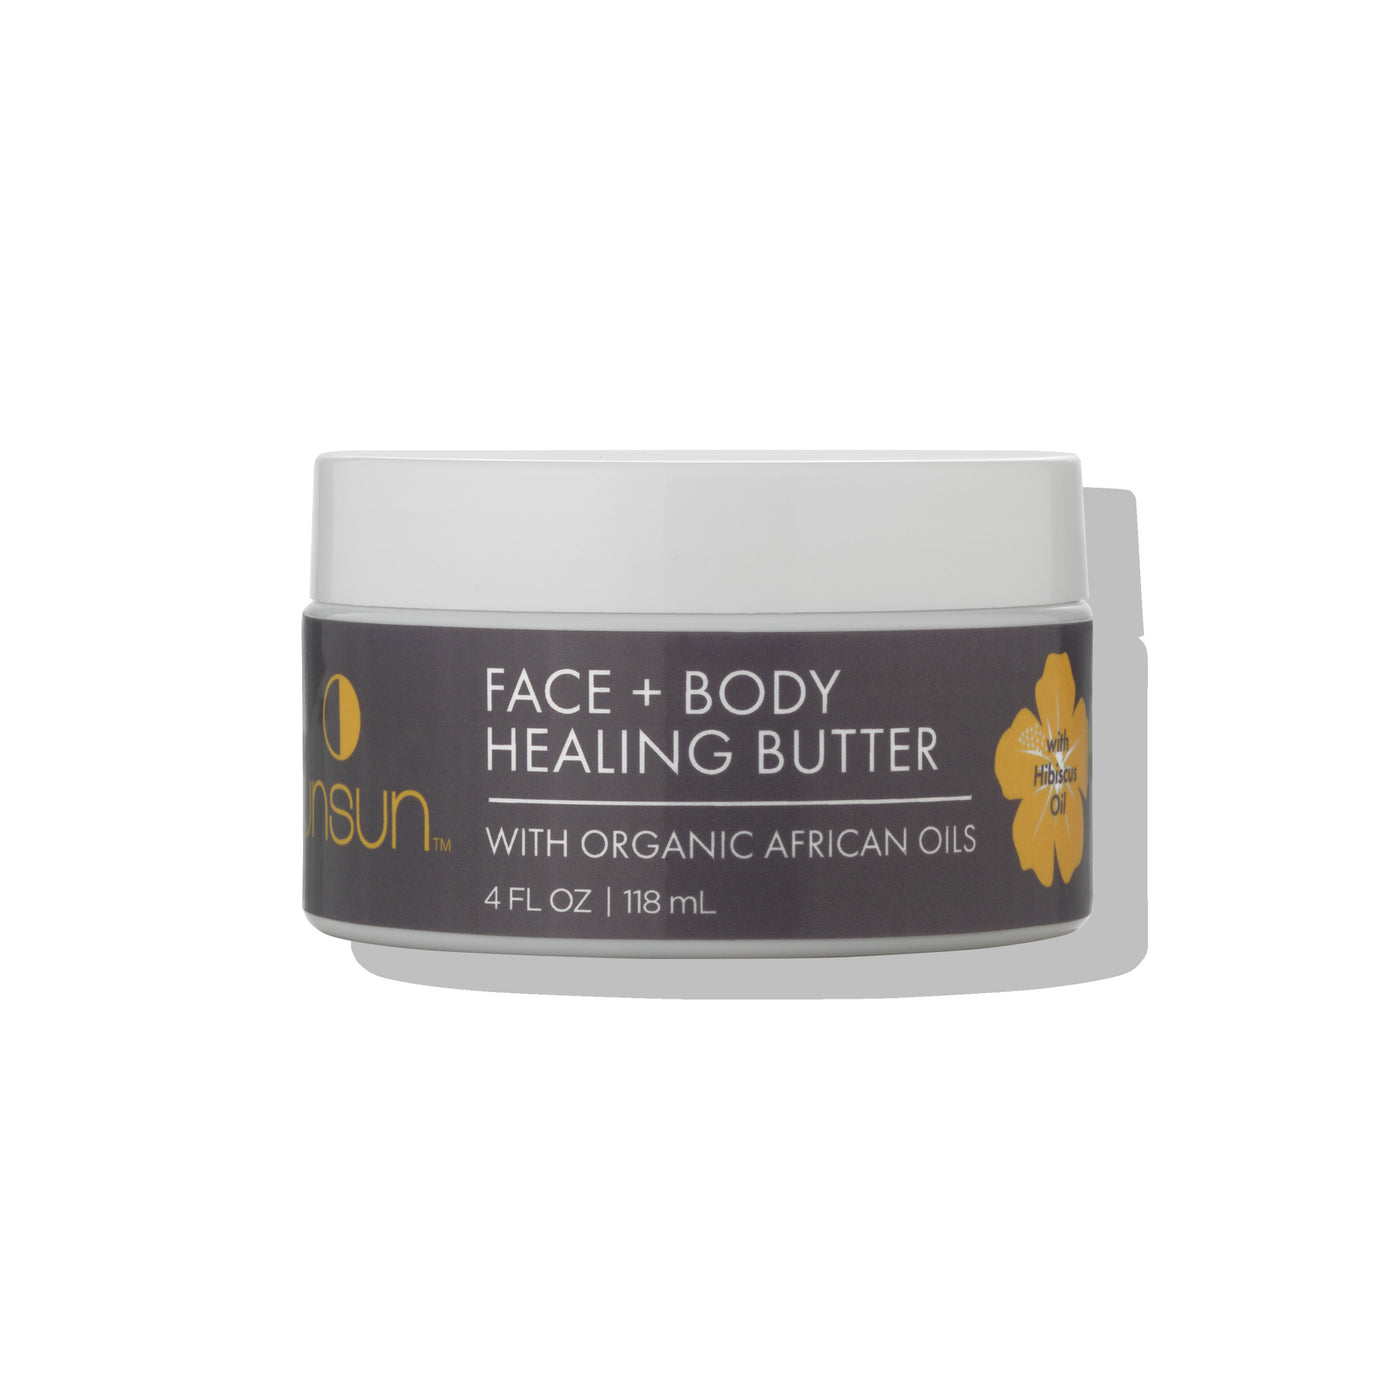 Face + Body Healing Butter